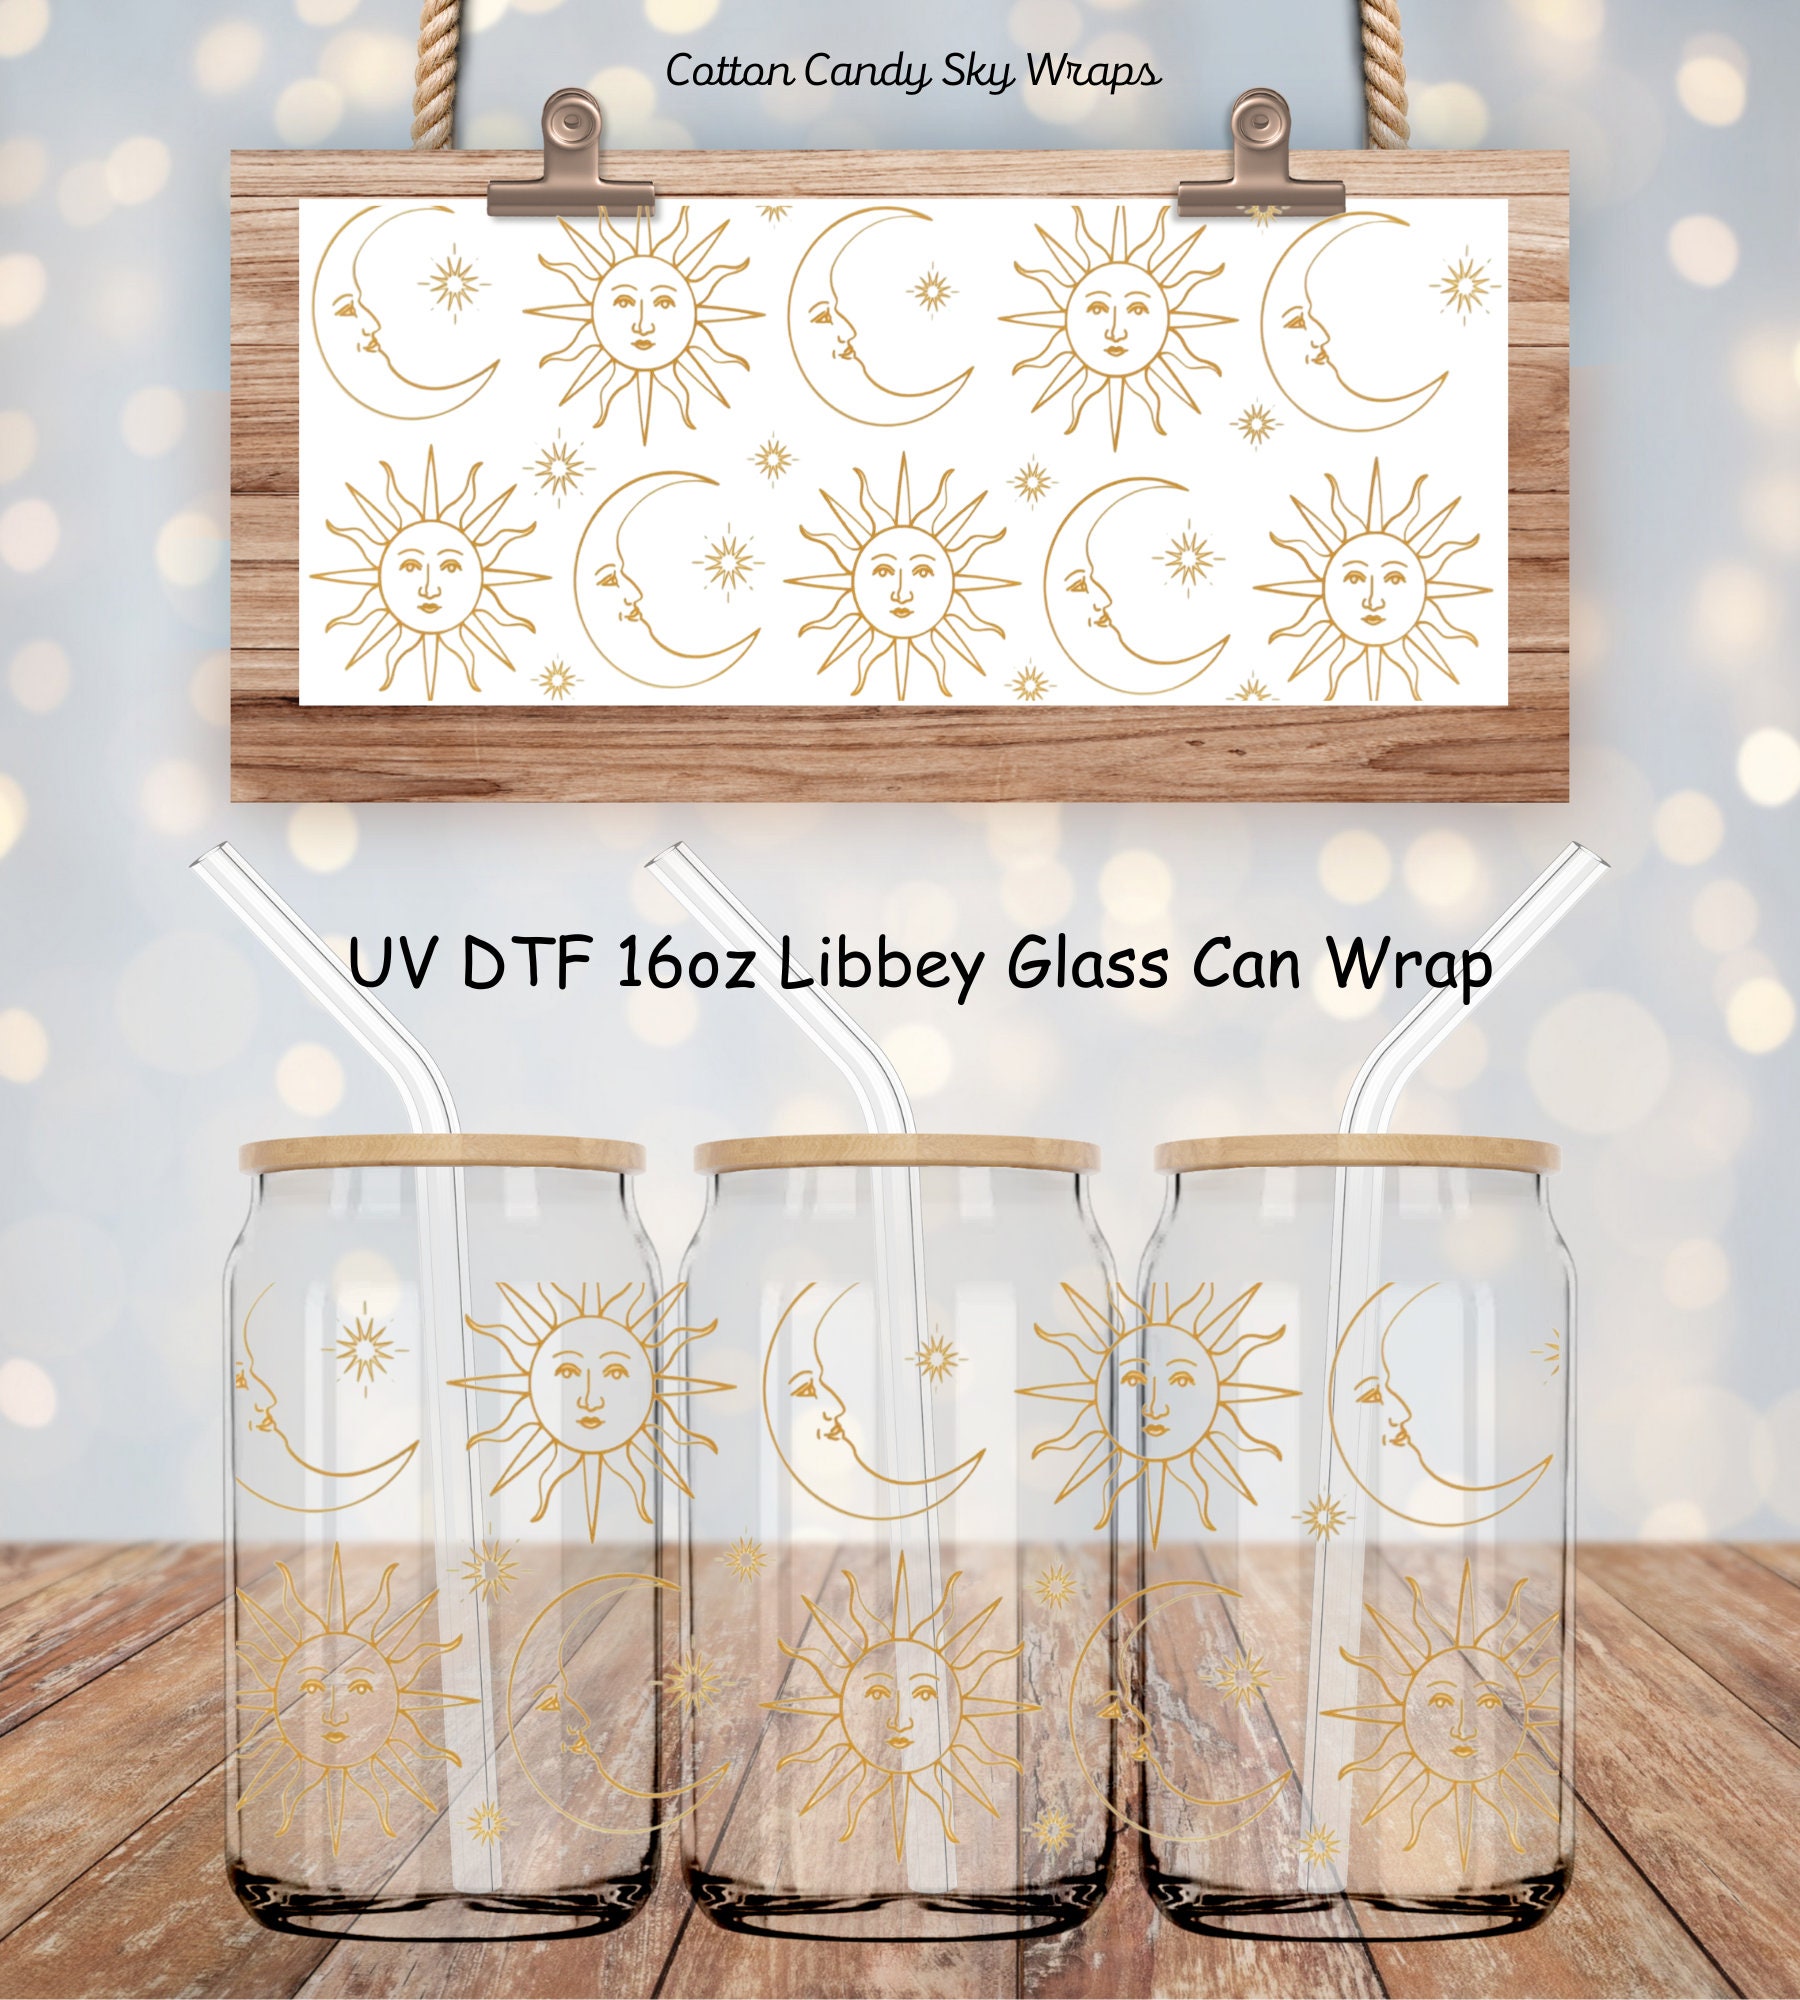 Sticker Transfer Mom Vocabulary UV DTF For Wraps The Libby Glasses